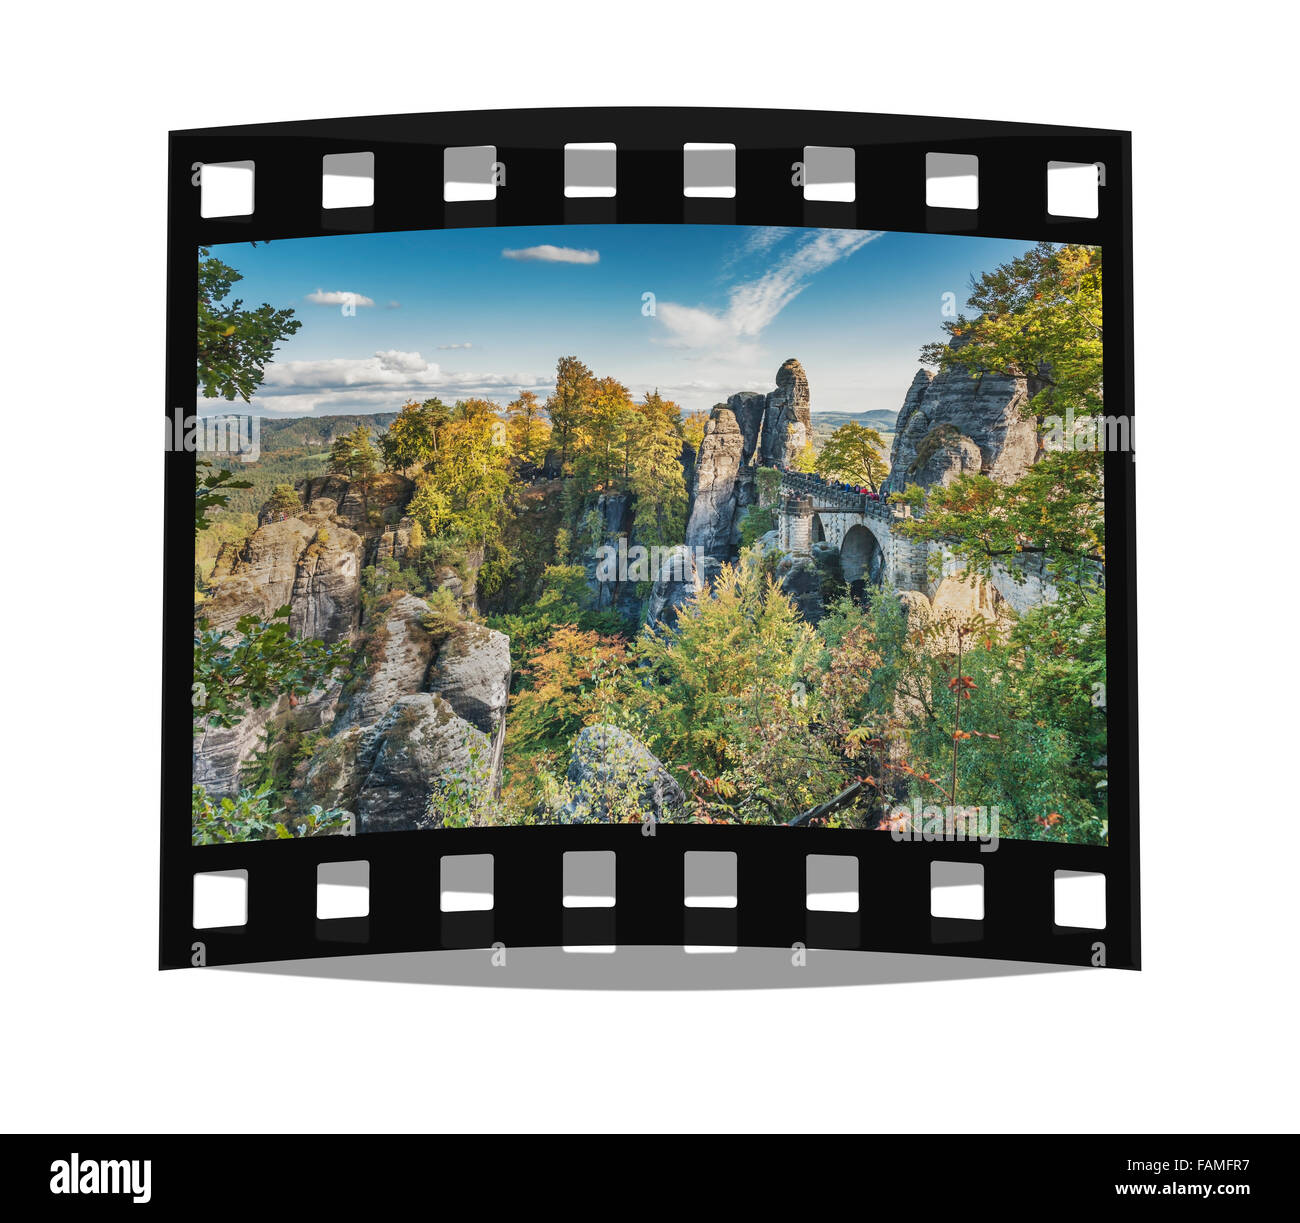 Vue de la formation rocheuse Bastei (Bastion), la Suisse Saxonne, des montagnes de grès de l'Elbe, Saxe, Allemagne, Europe Banque D'Images